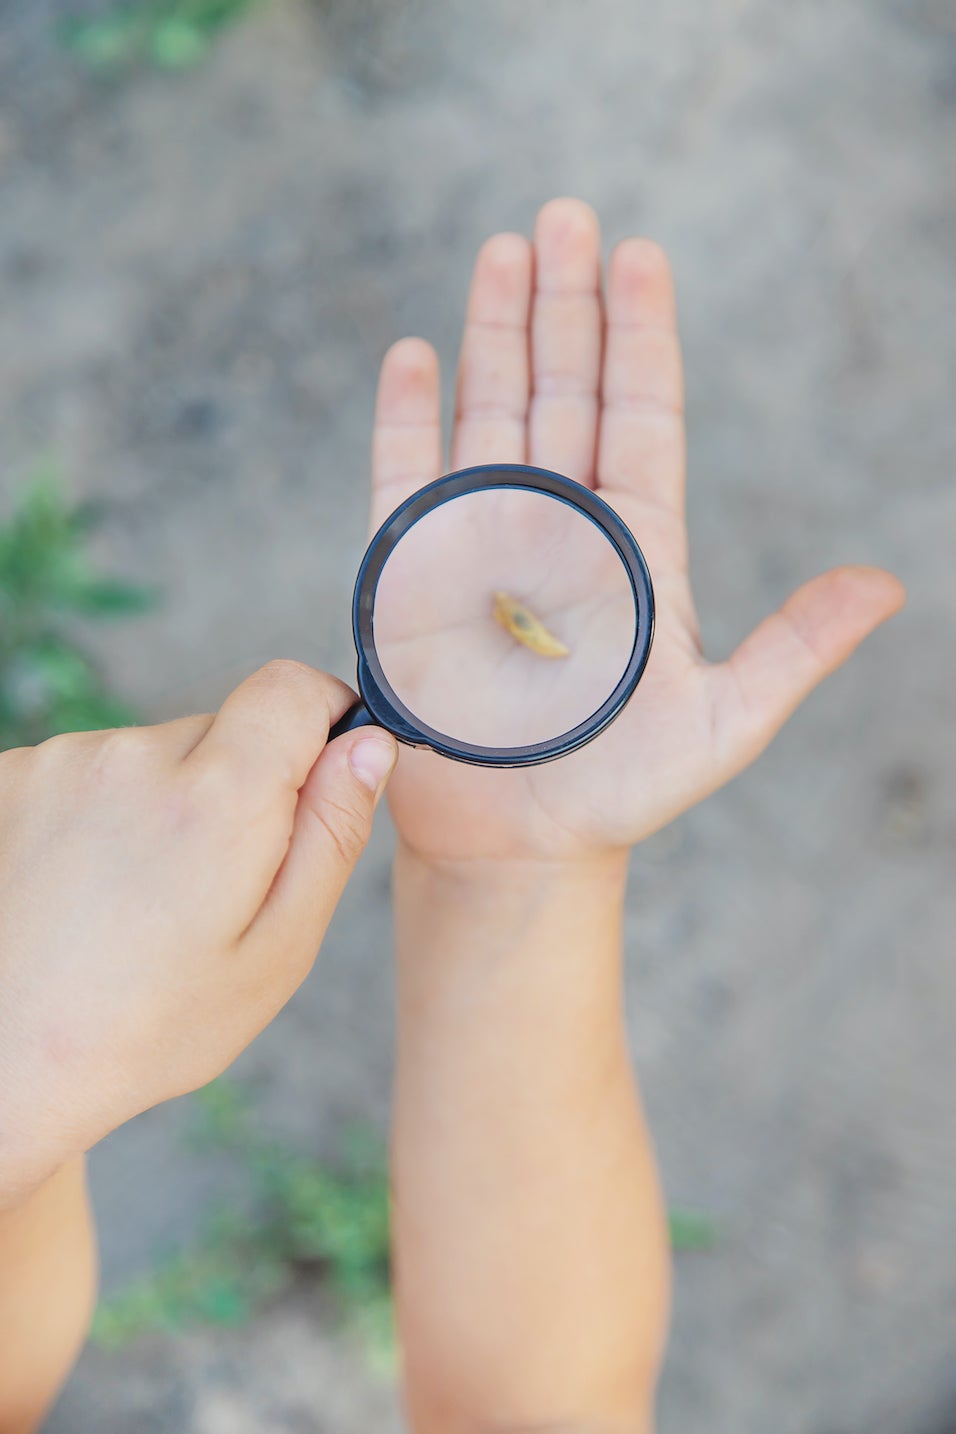 Slug under a magnifying glass